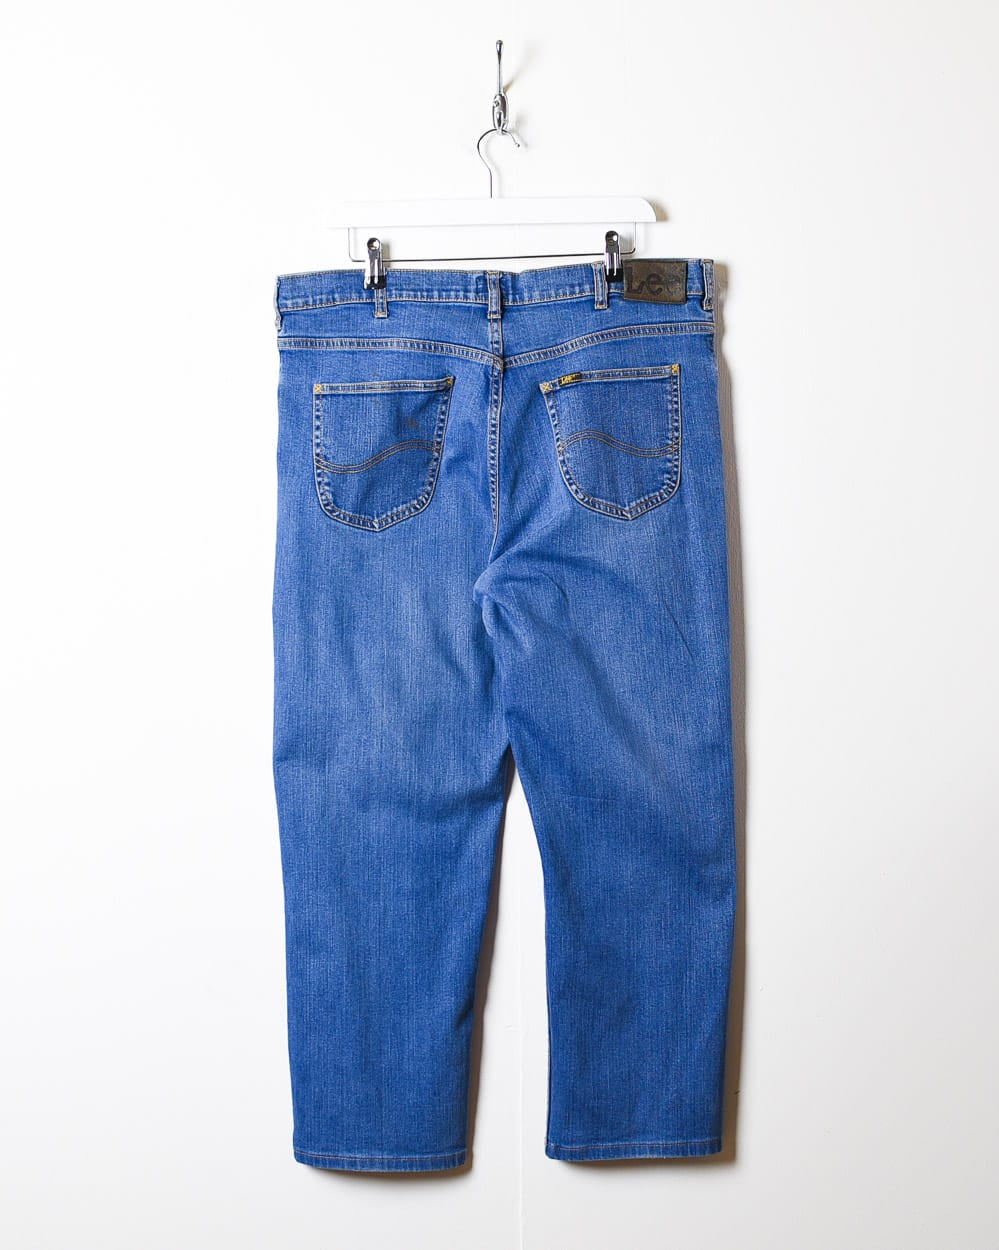 Blue Lee Jeans - W36 L27